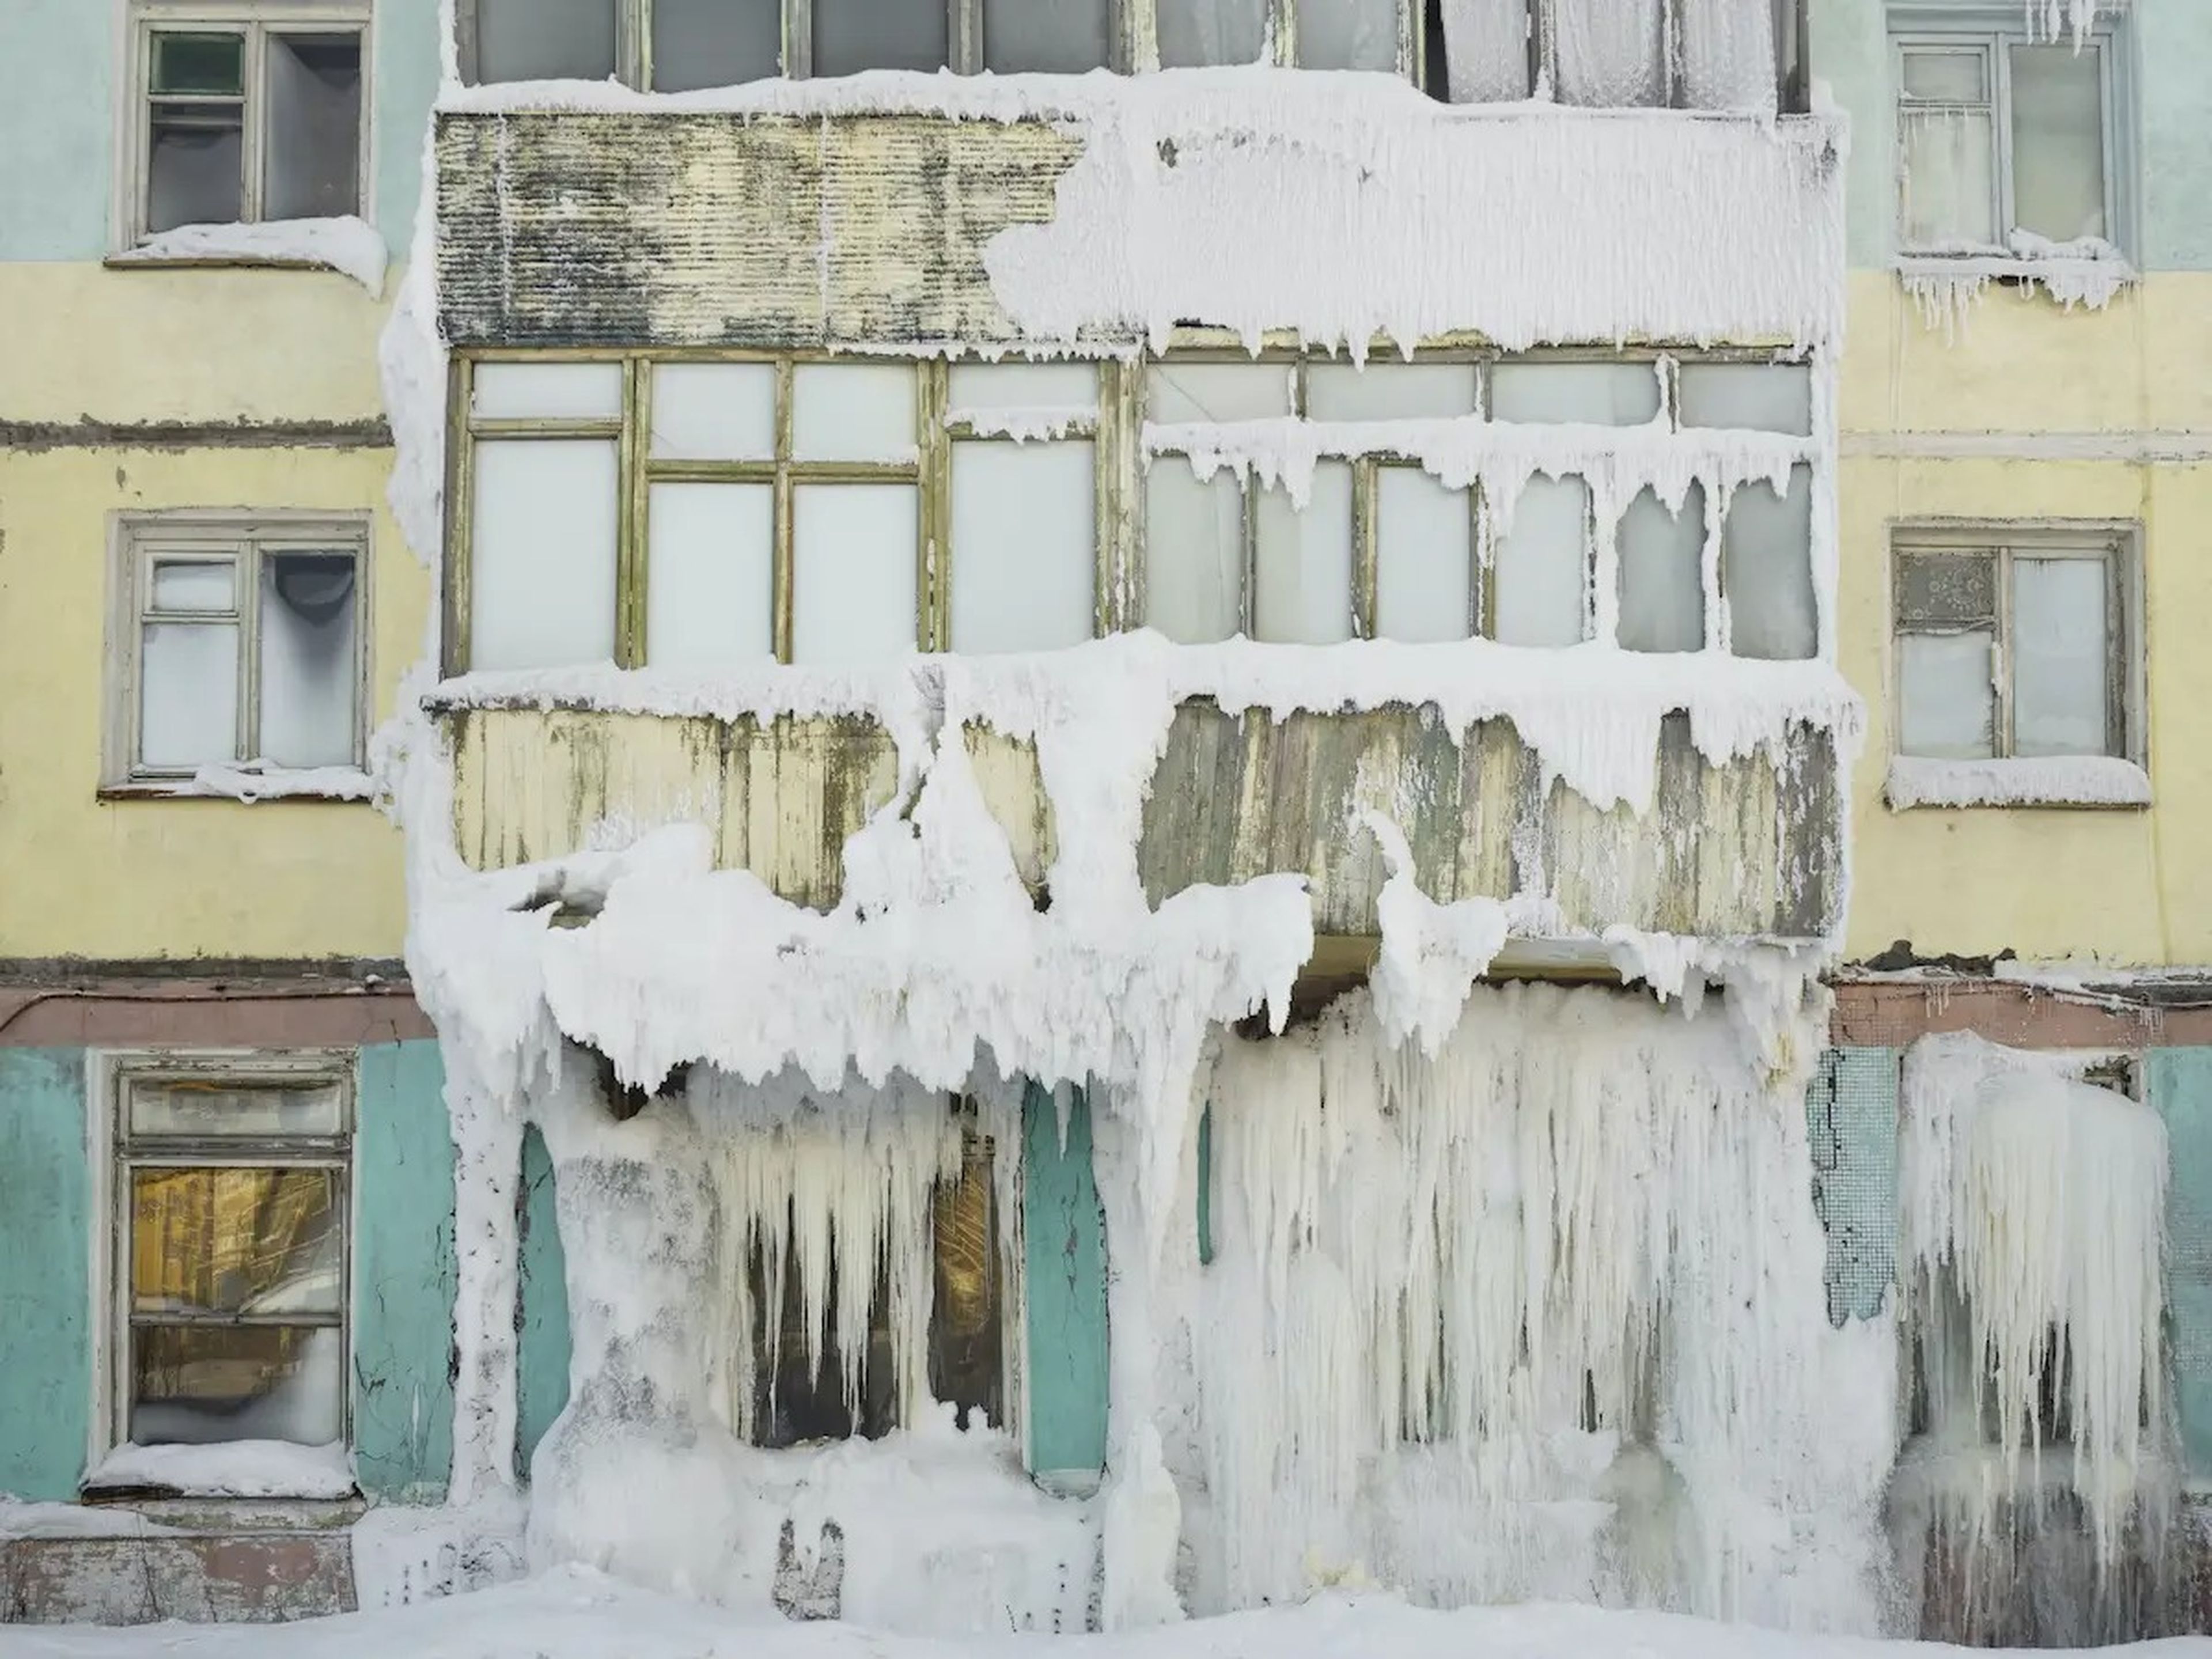 Los edificios, en gran parte abandonados, están cubiertos de nieve y hielo.